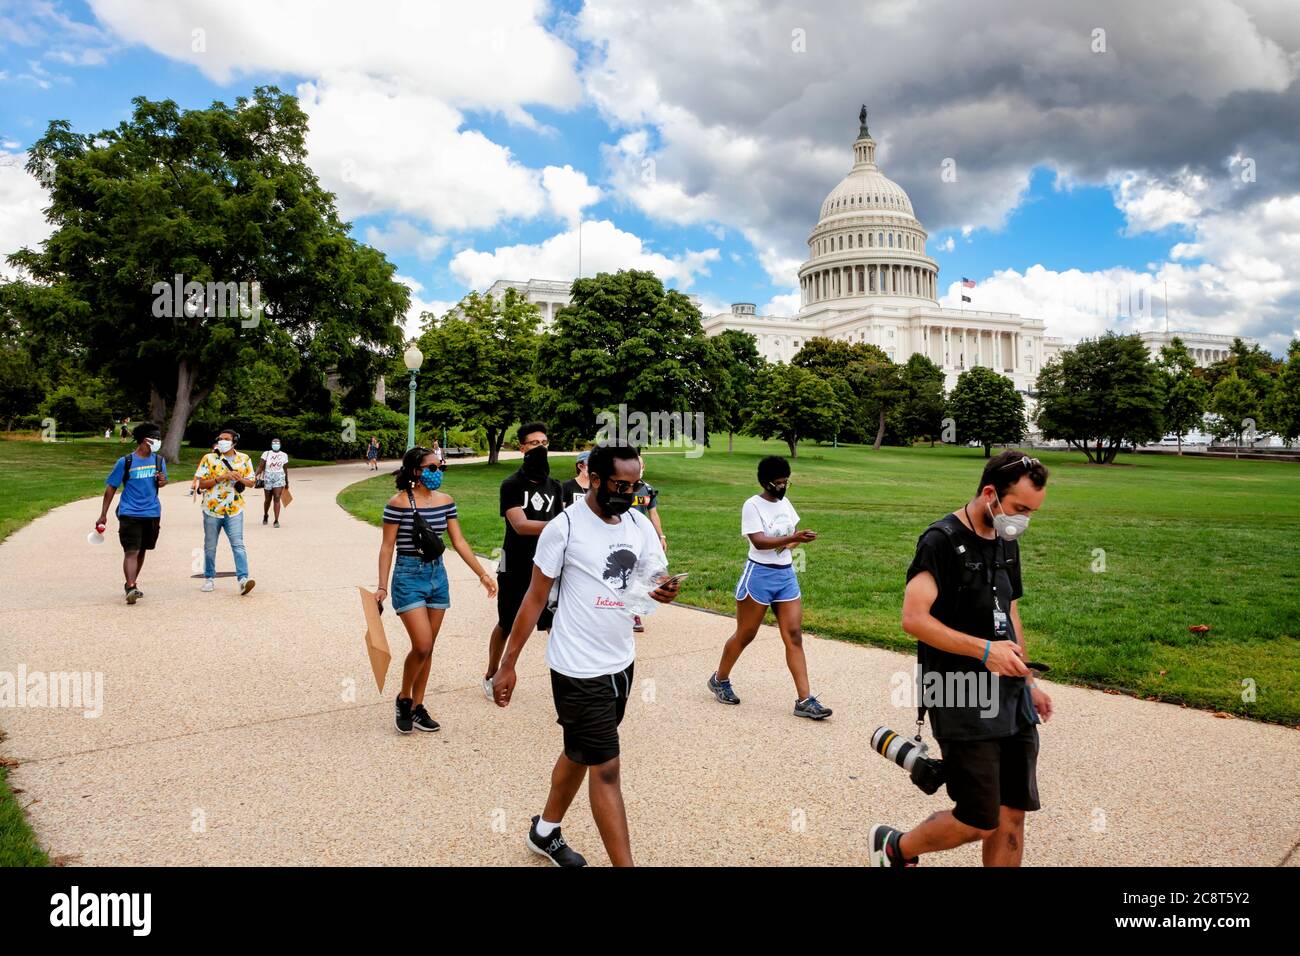 Les manifestants quittent le Capitole des États-Unis dans la fermeture de la marche du Capitole par le quartier de la liberté, Washington, DC, États-Unis Banque D'Images